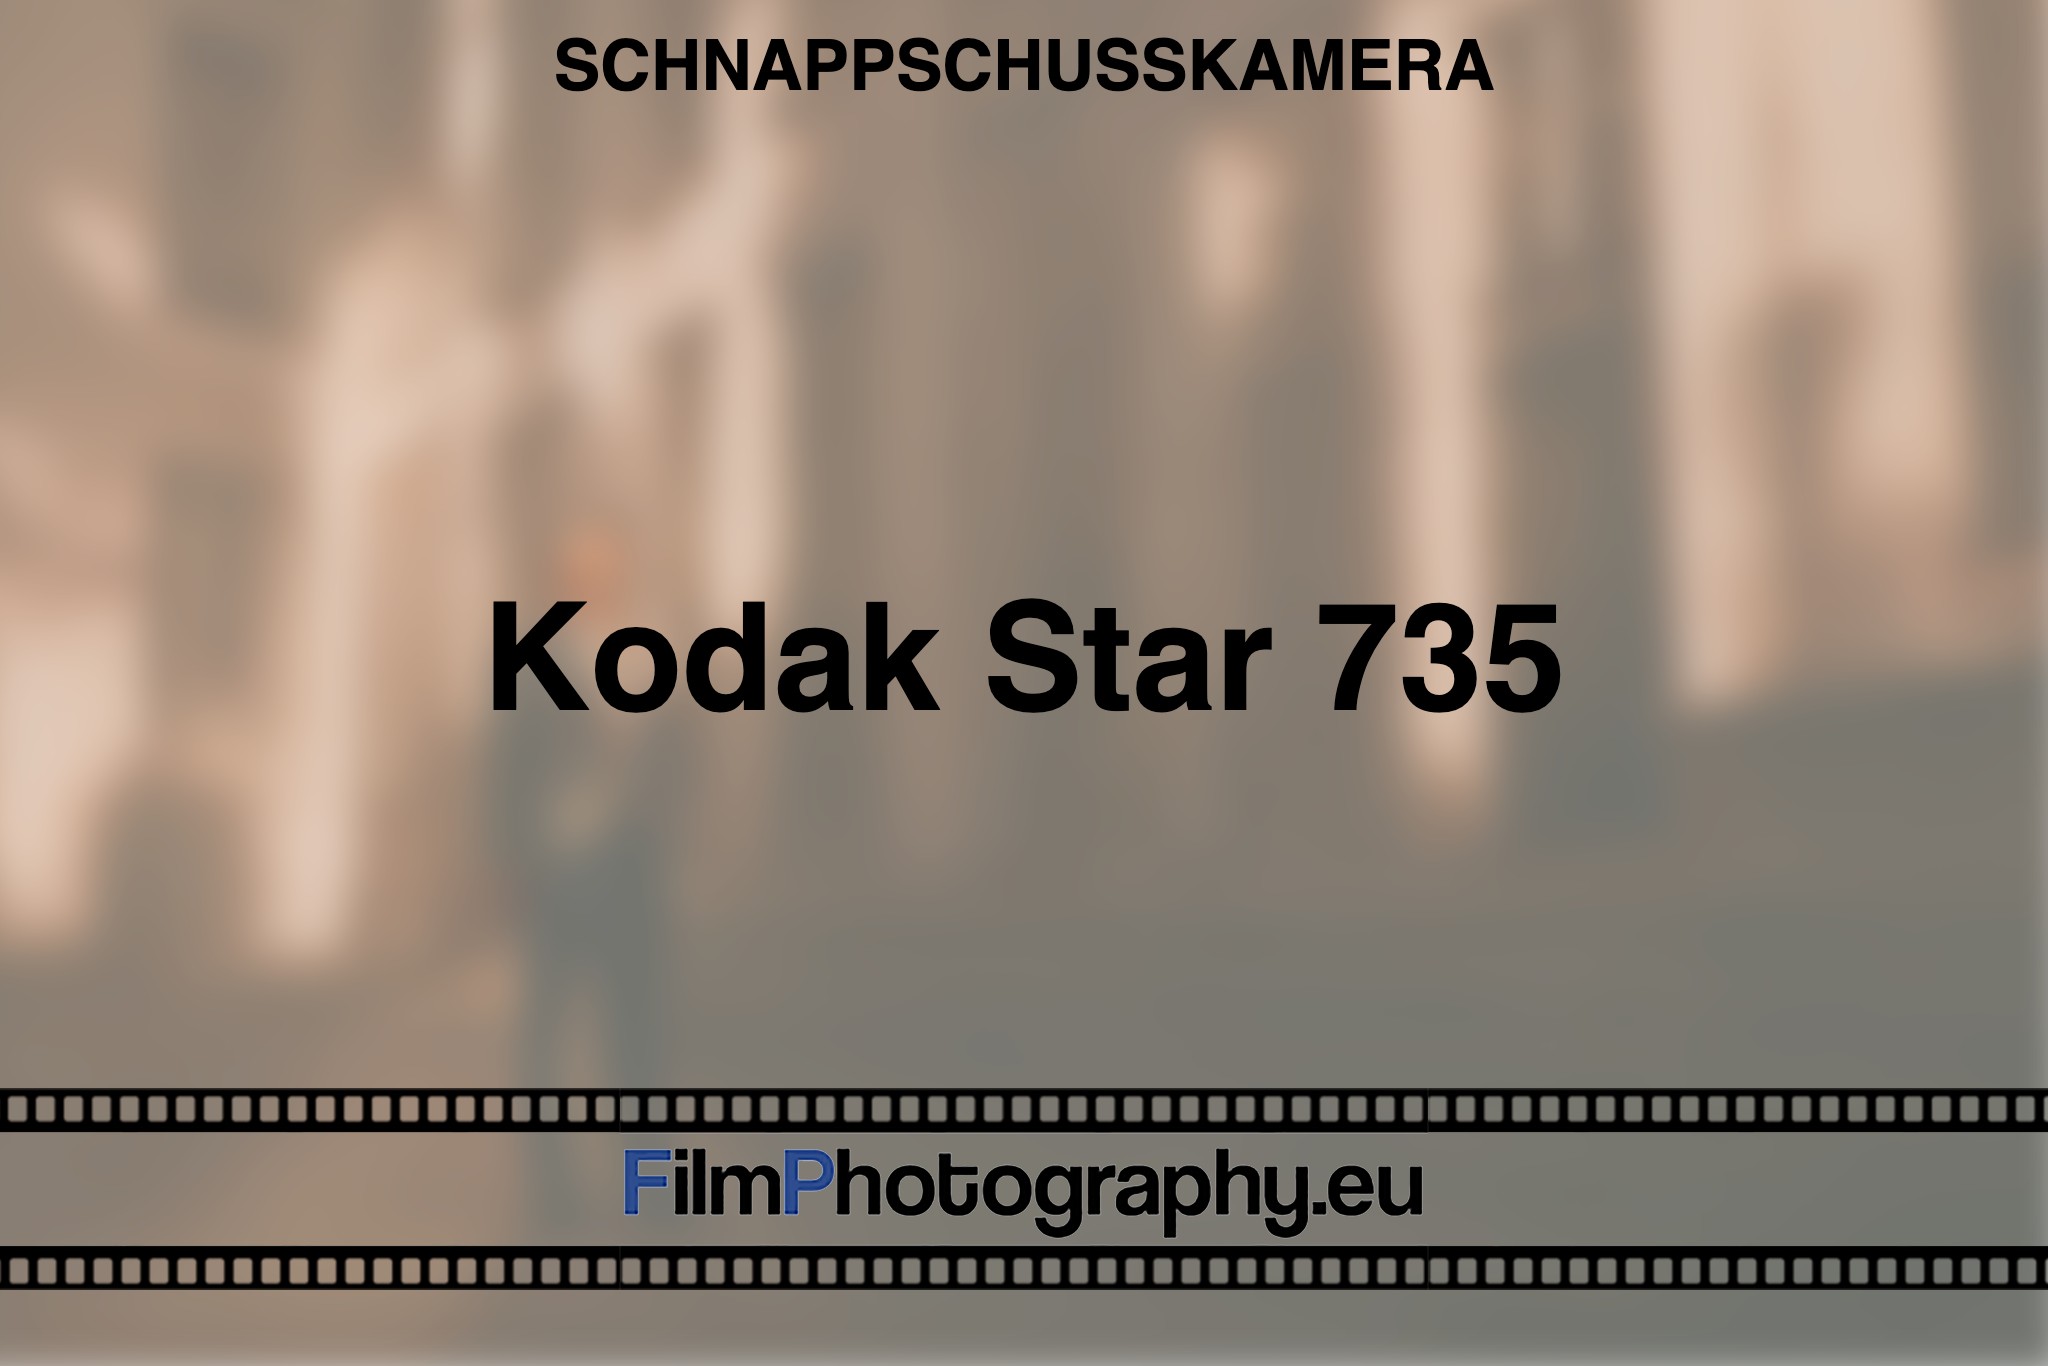 kodak-star-735-schnappschusskamera-bnv